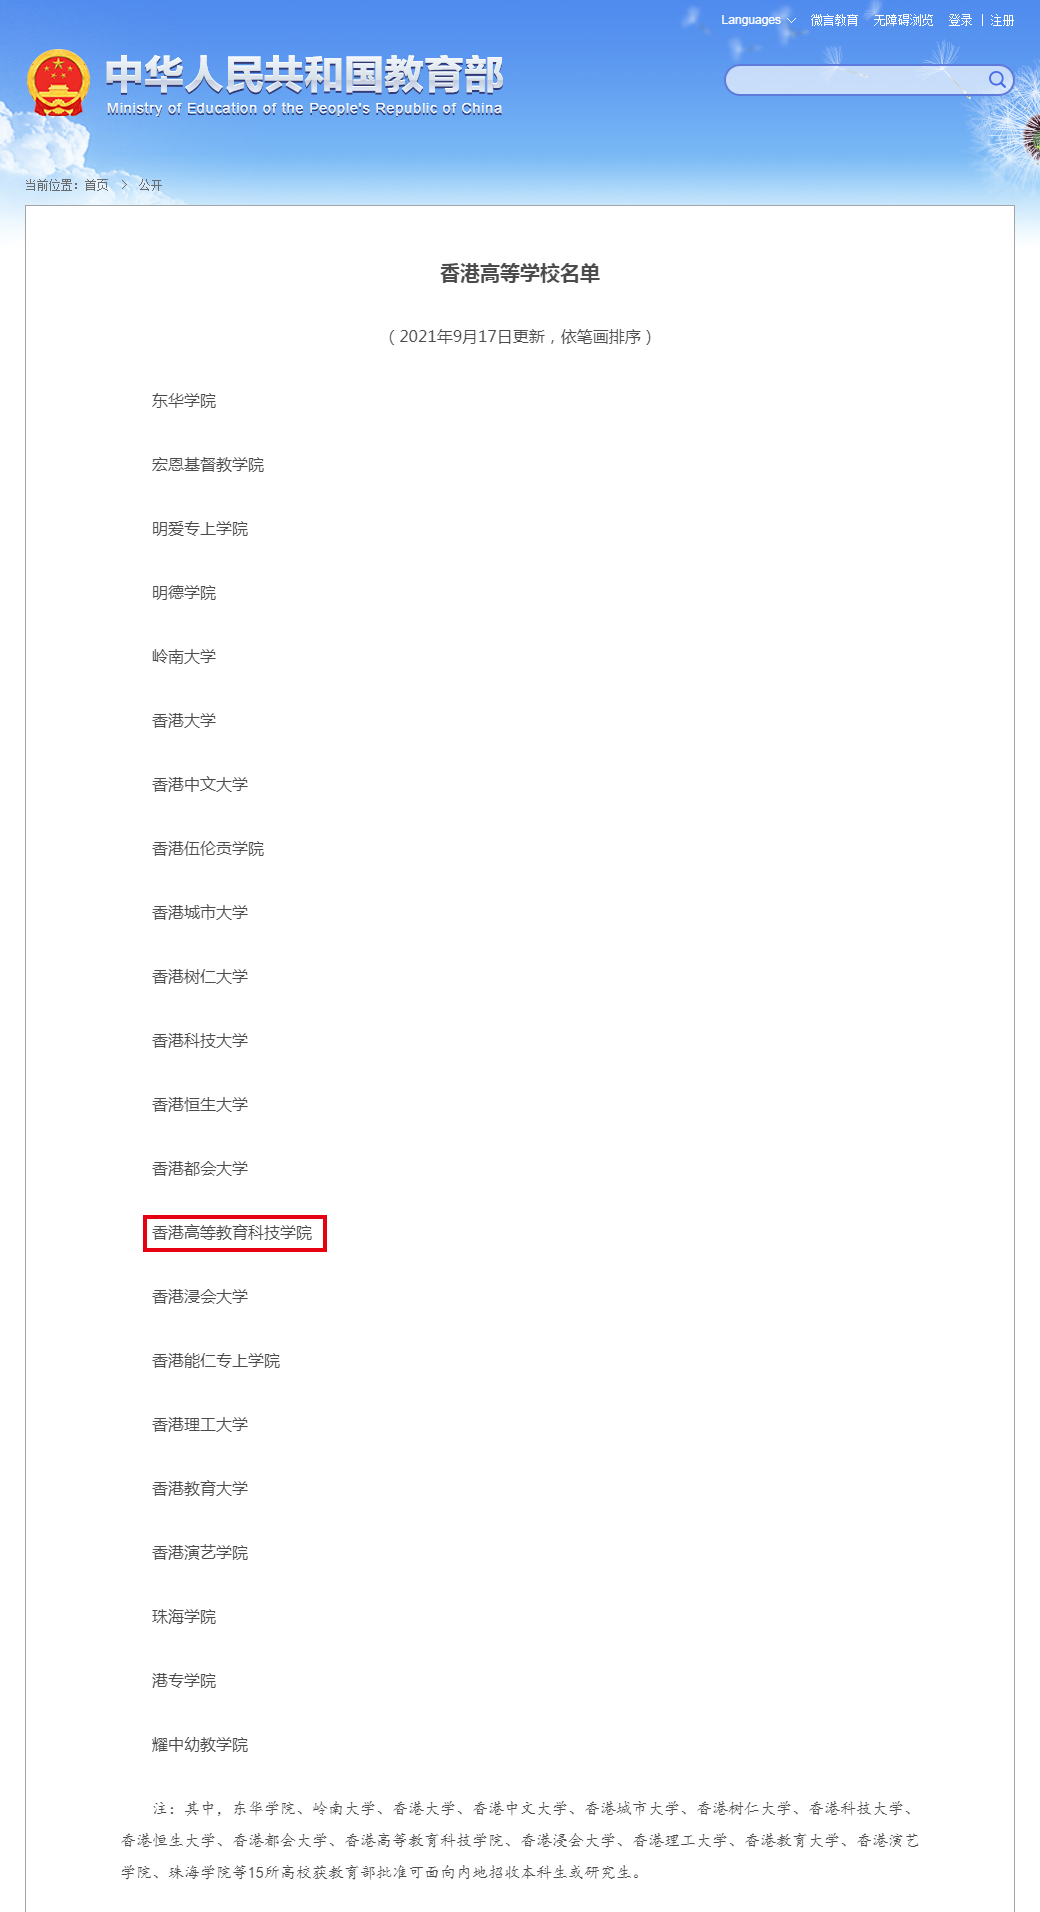 香港高等学校名单 - 中华人民共和国教育部政府门户网站.jpg